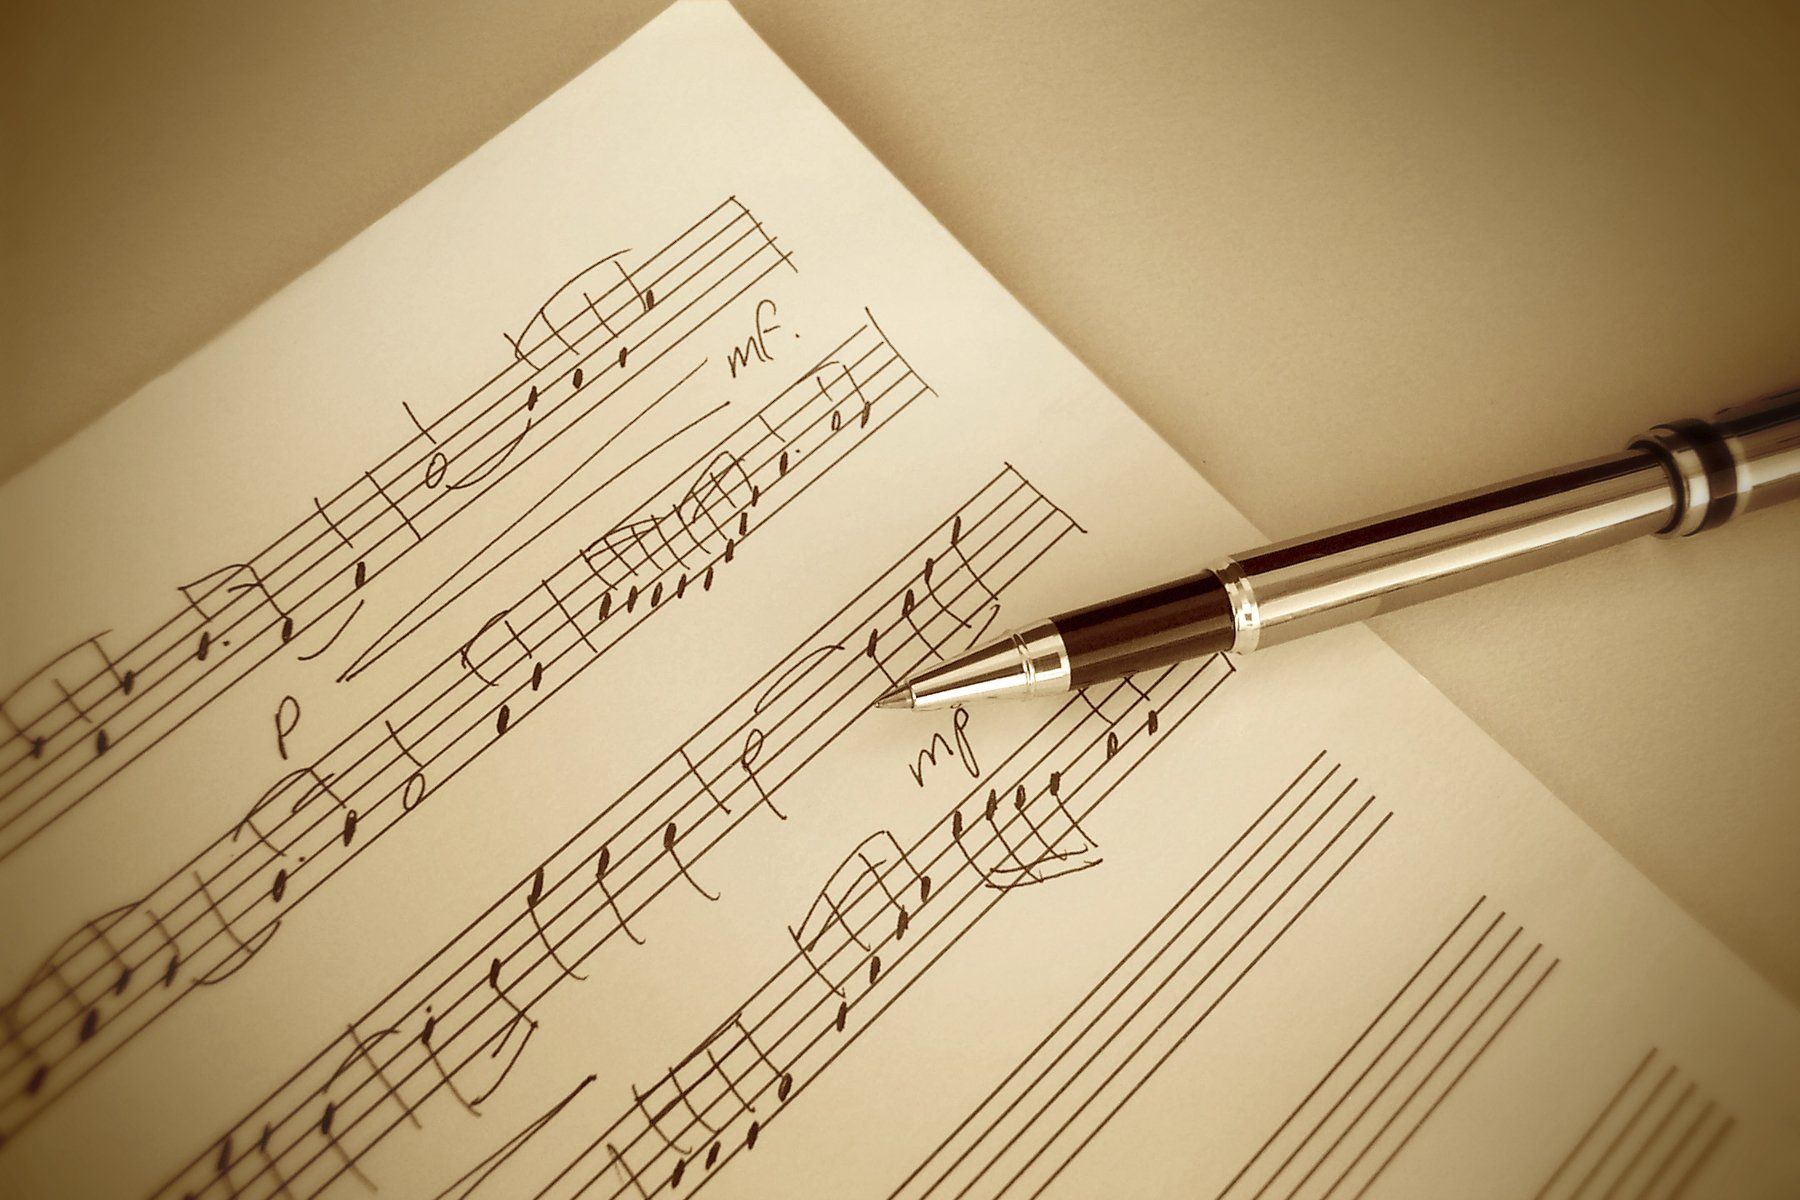 Notenblatt mit einem Stift, soll das Schreiben von eigener Musik symbolisieren